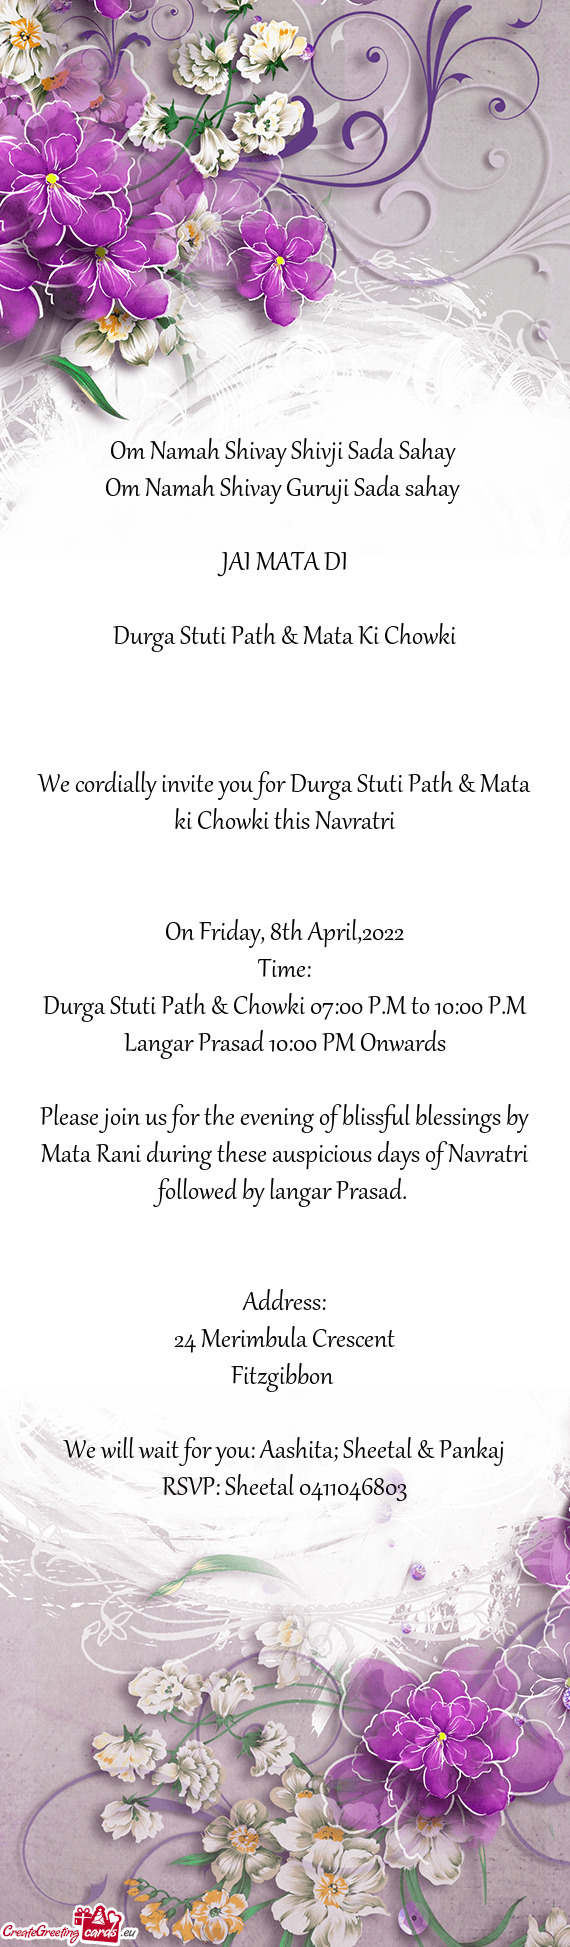 Durga Stuti Path & Mata Ki Chowki